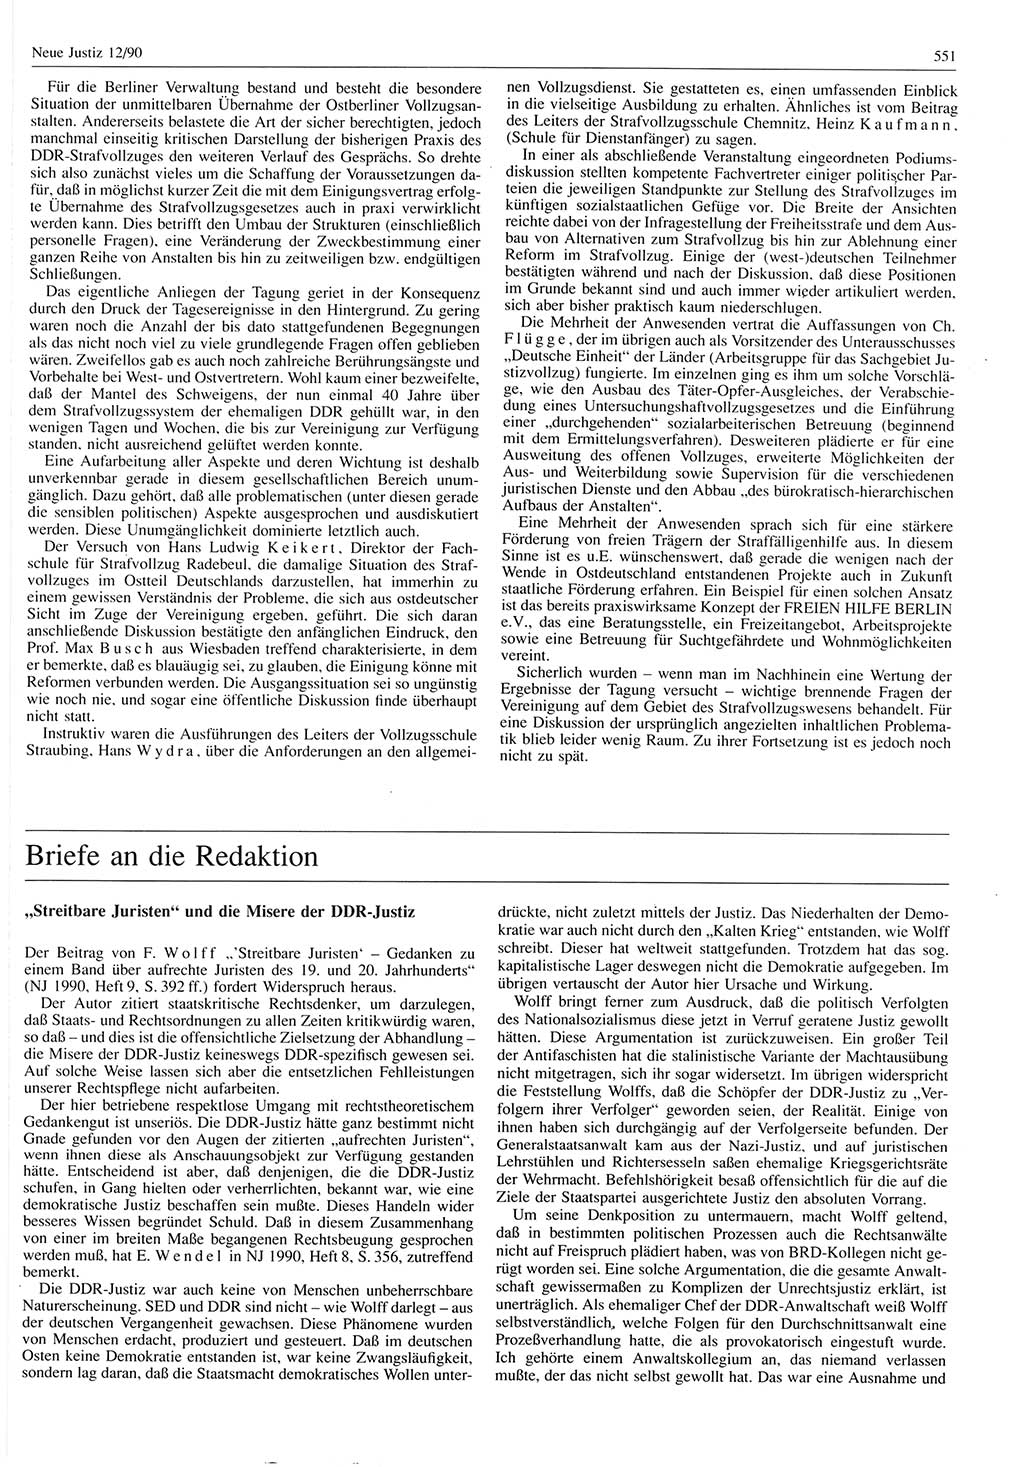 Neue Justiz (NJ), Zeitschrift für Rechtsetzung und Rechtsanwendung [Deutsche Demokratische Republik (DDR)], 44. Jahrgang 1990, Seite 551 (NJ DDR 1990, S. 551)